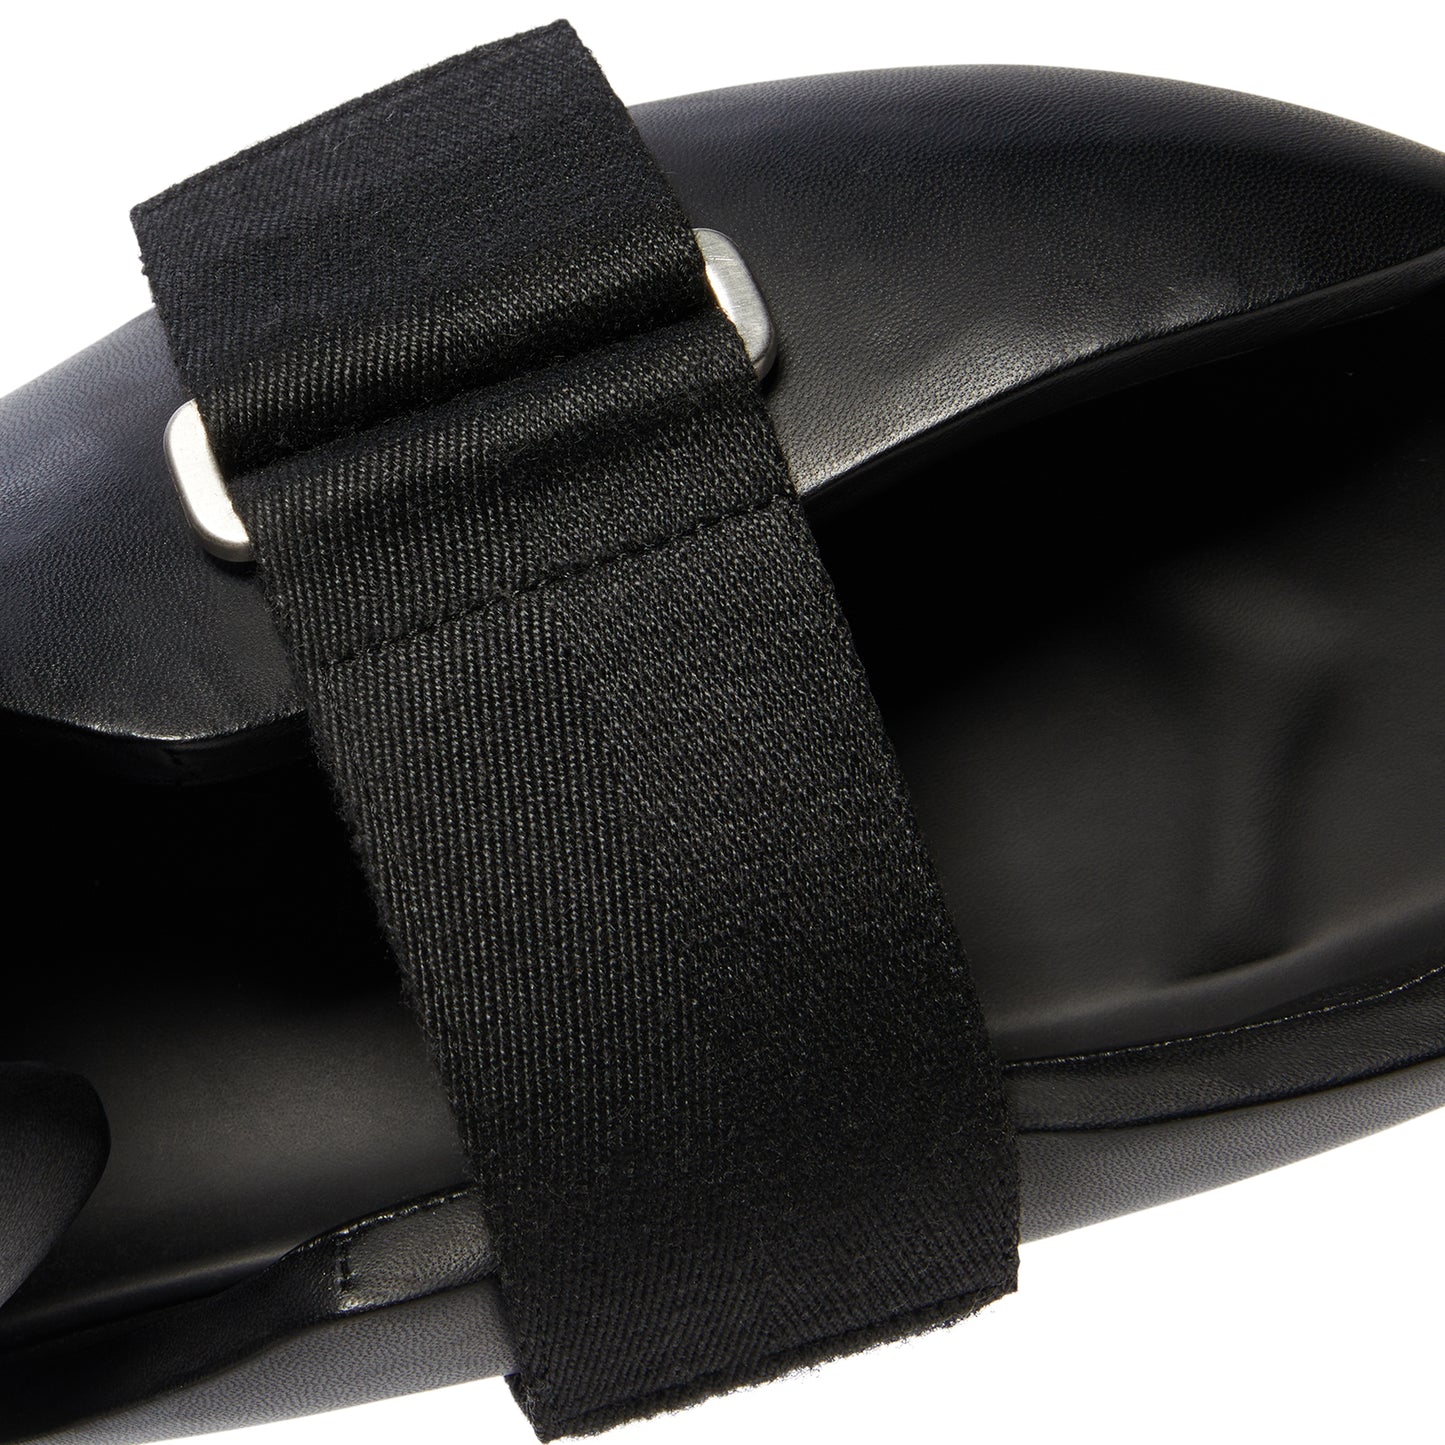 Rick Owens Low Splint Shoes (Black)